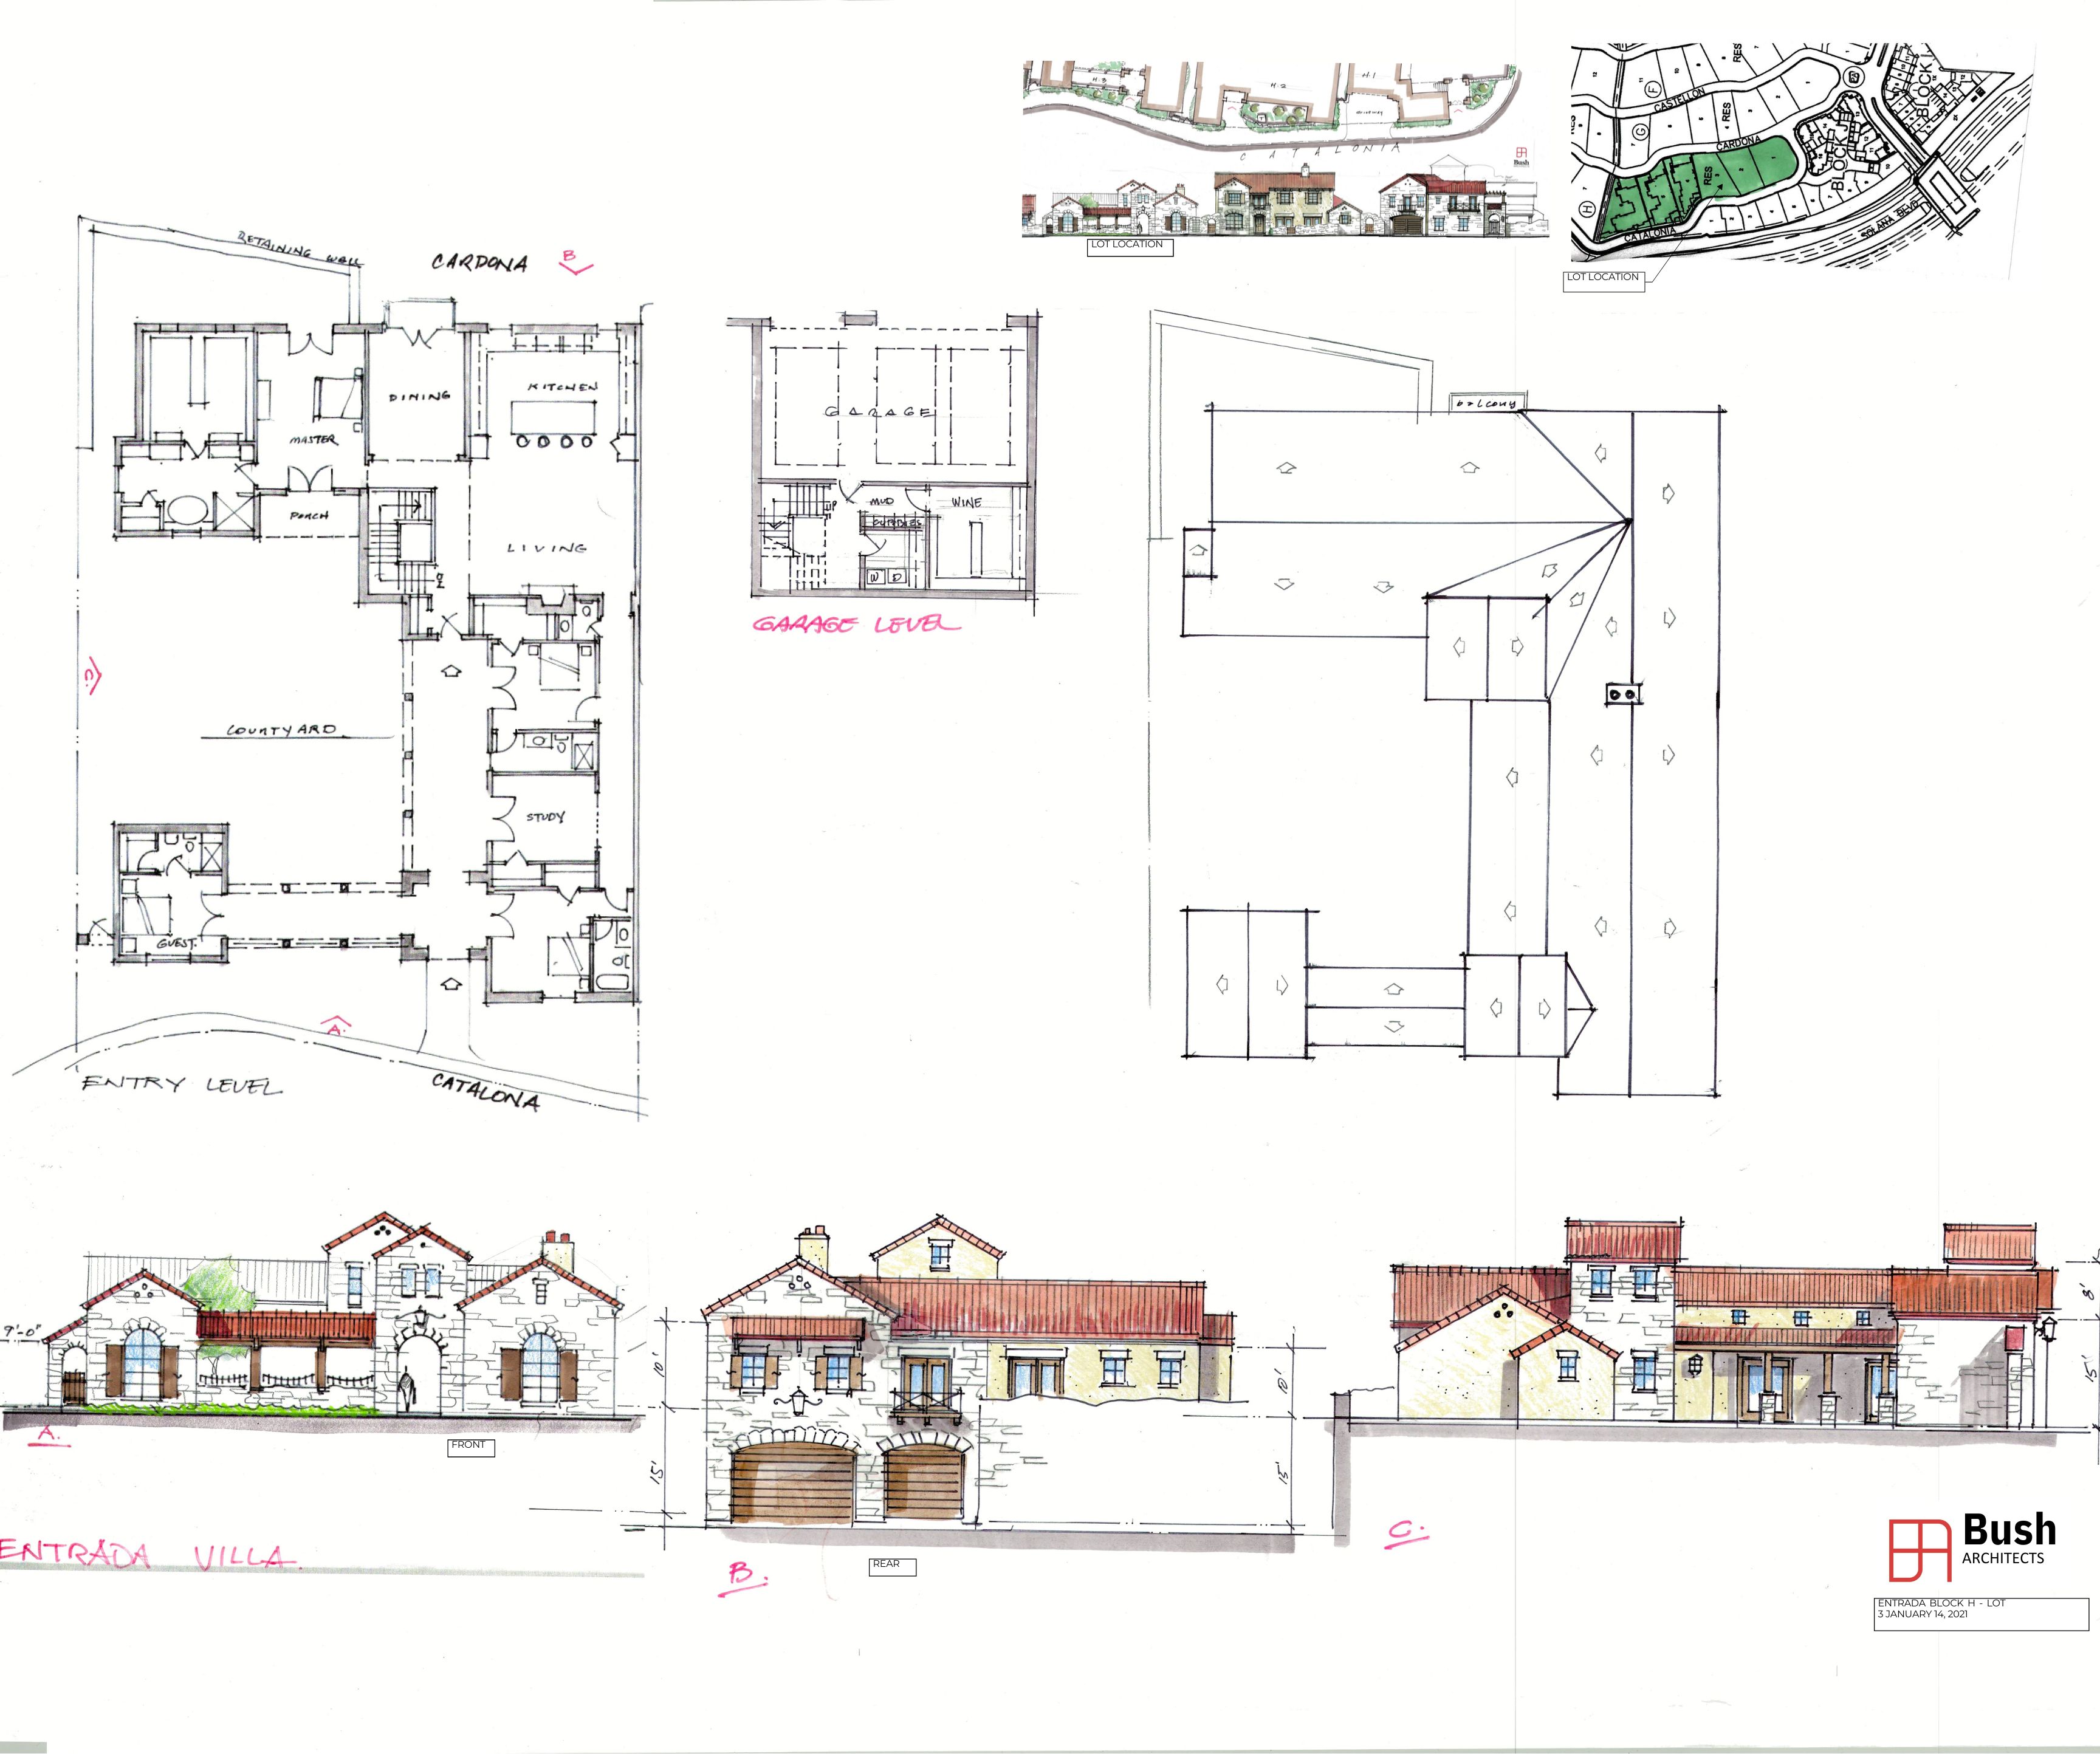 ENTRADA Block H Lot 3 ACC Review Sketch 01142021.pdf